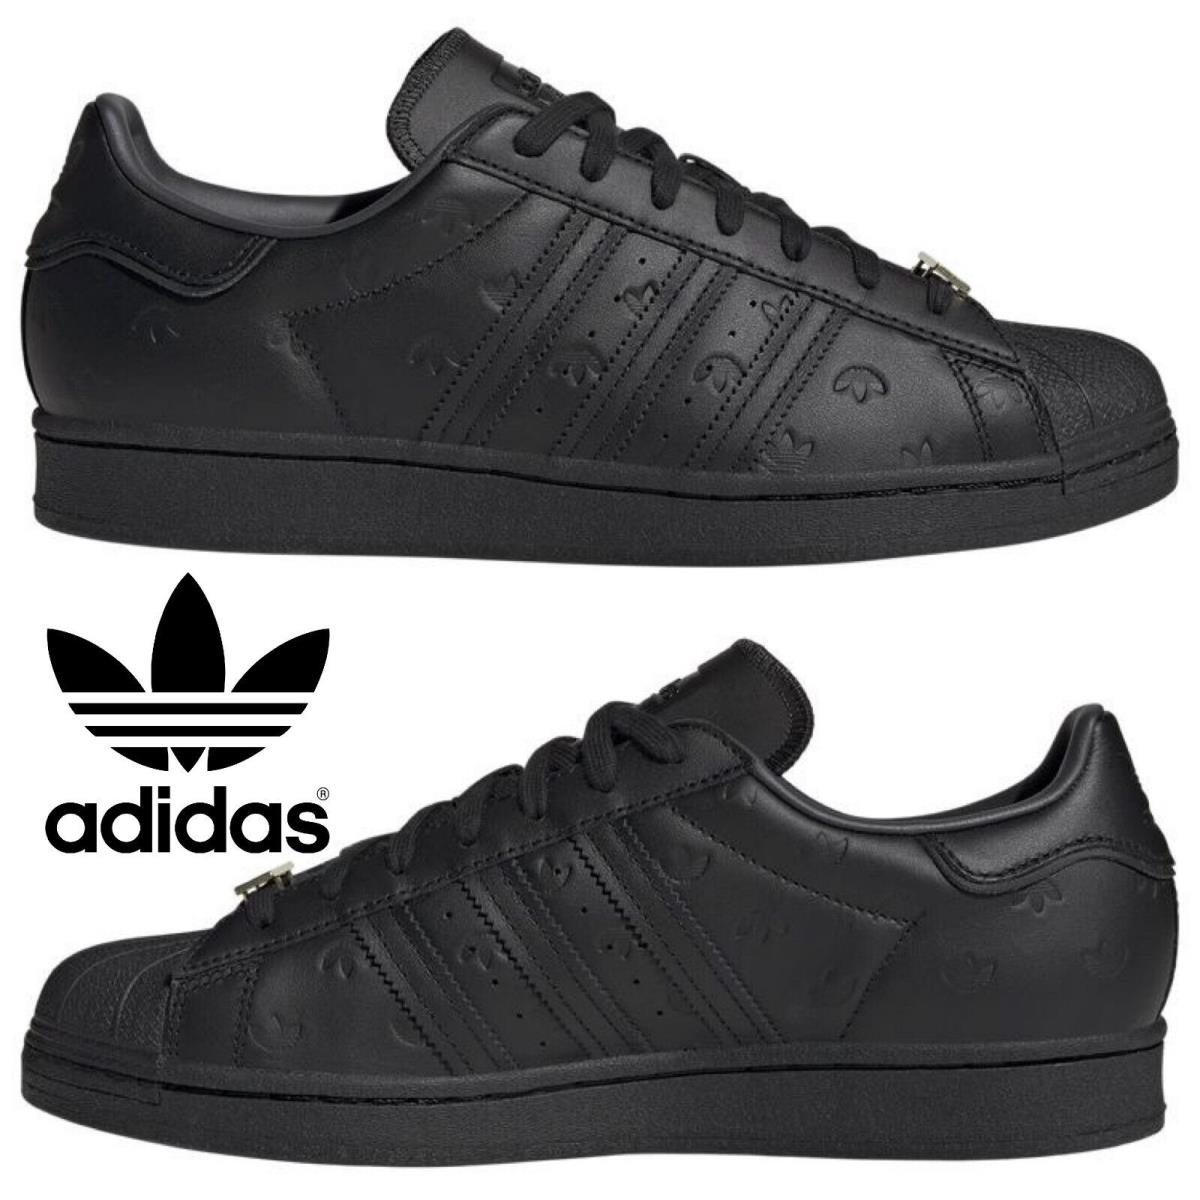 Adidas Originals Superstar Men`s Sneakers Comfort Sport Casual Shoe Red Black